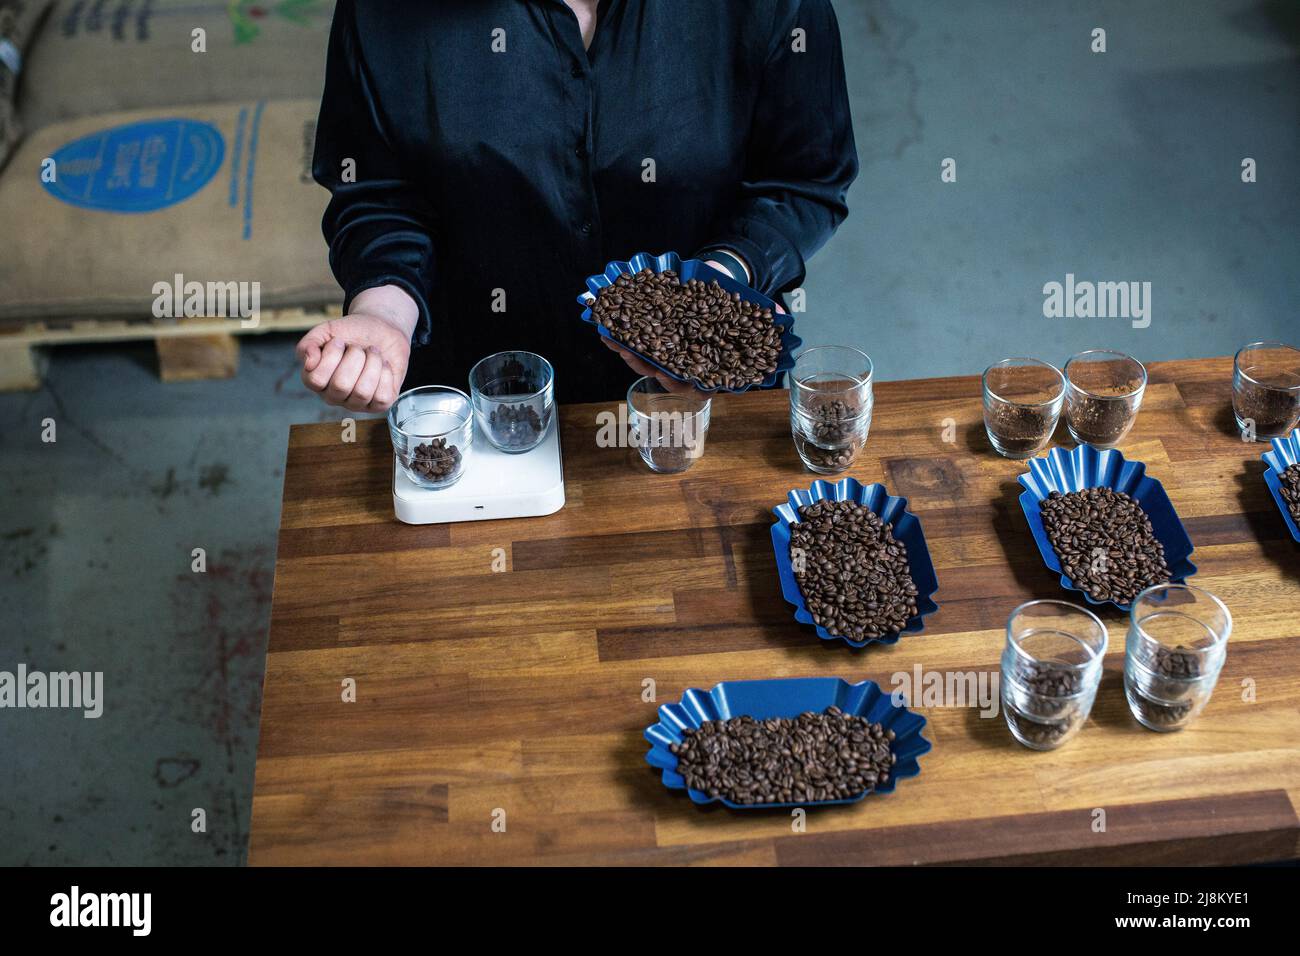 Avant de déguster du café, le Barista verse les grains de café dans un verre sur une balance. Banque D'Images